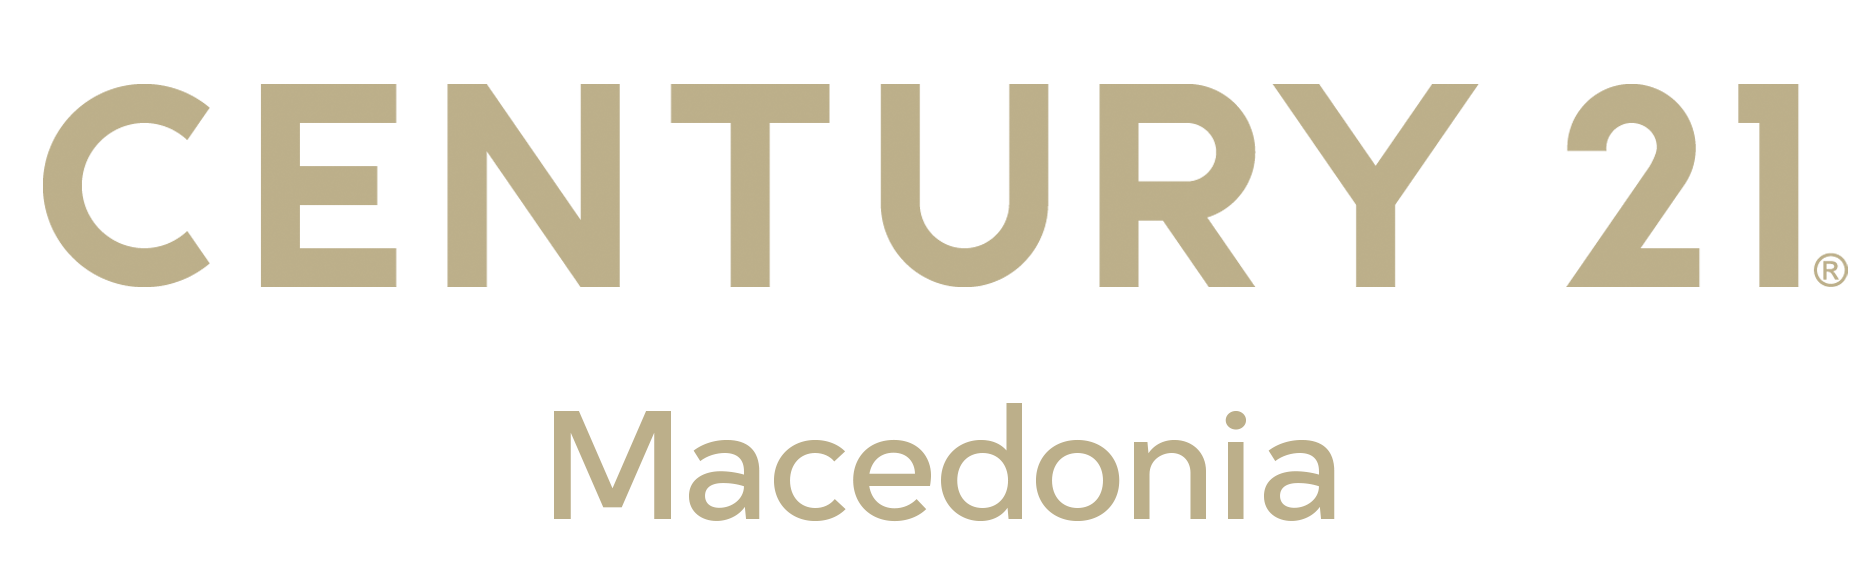 Century 21 Macedonia